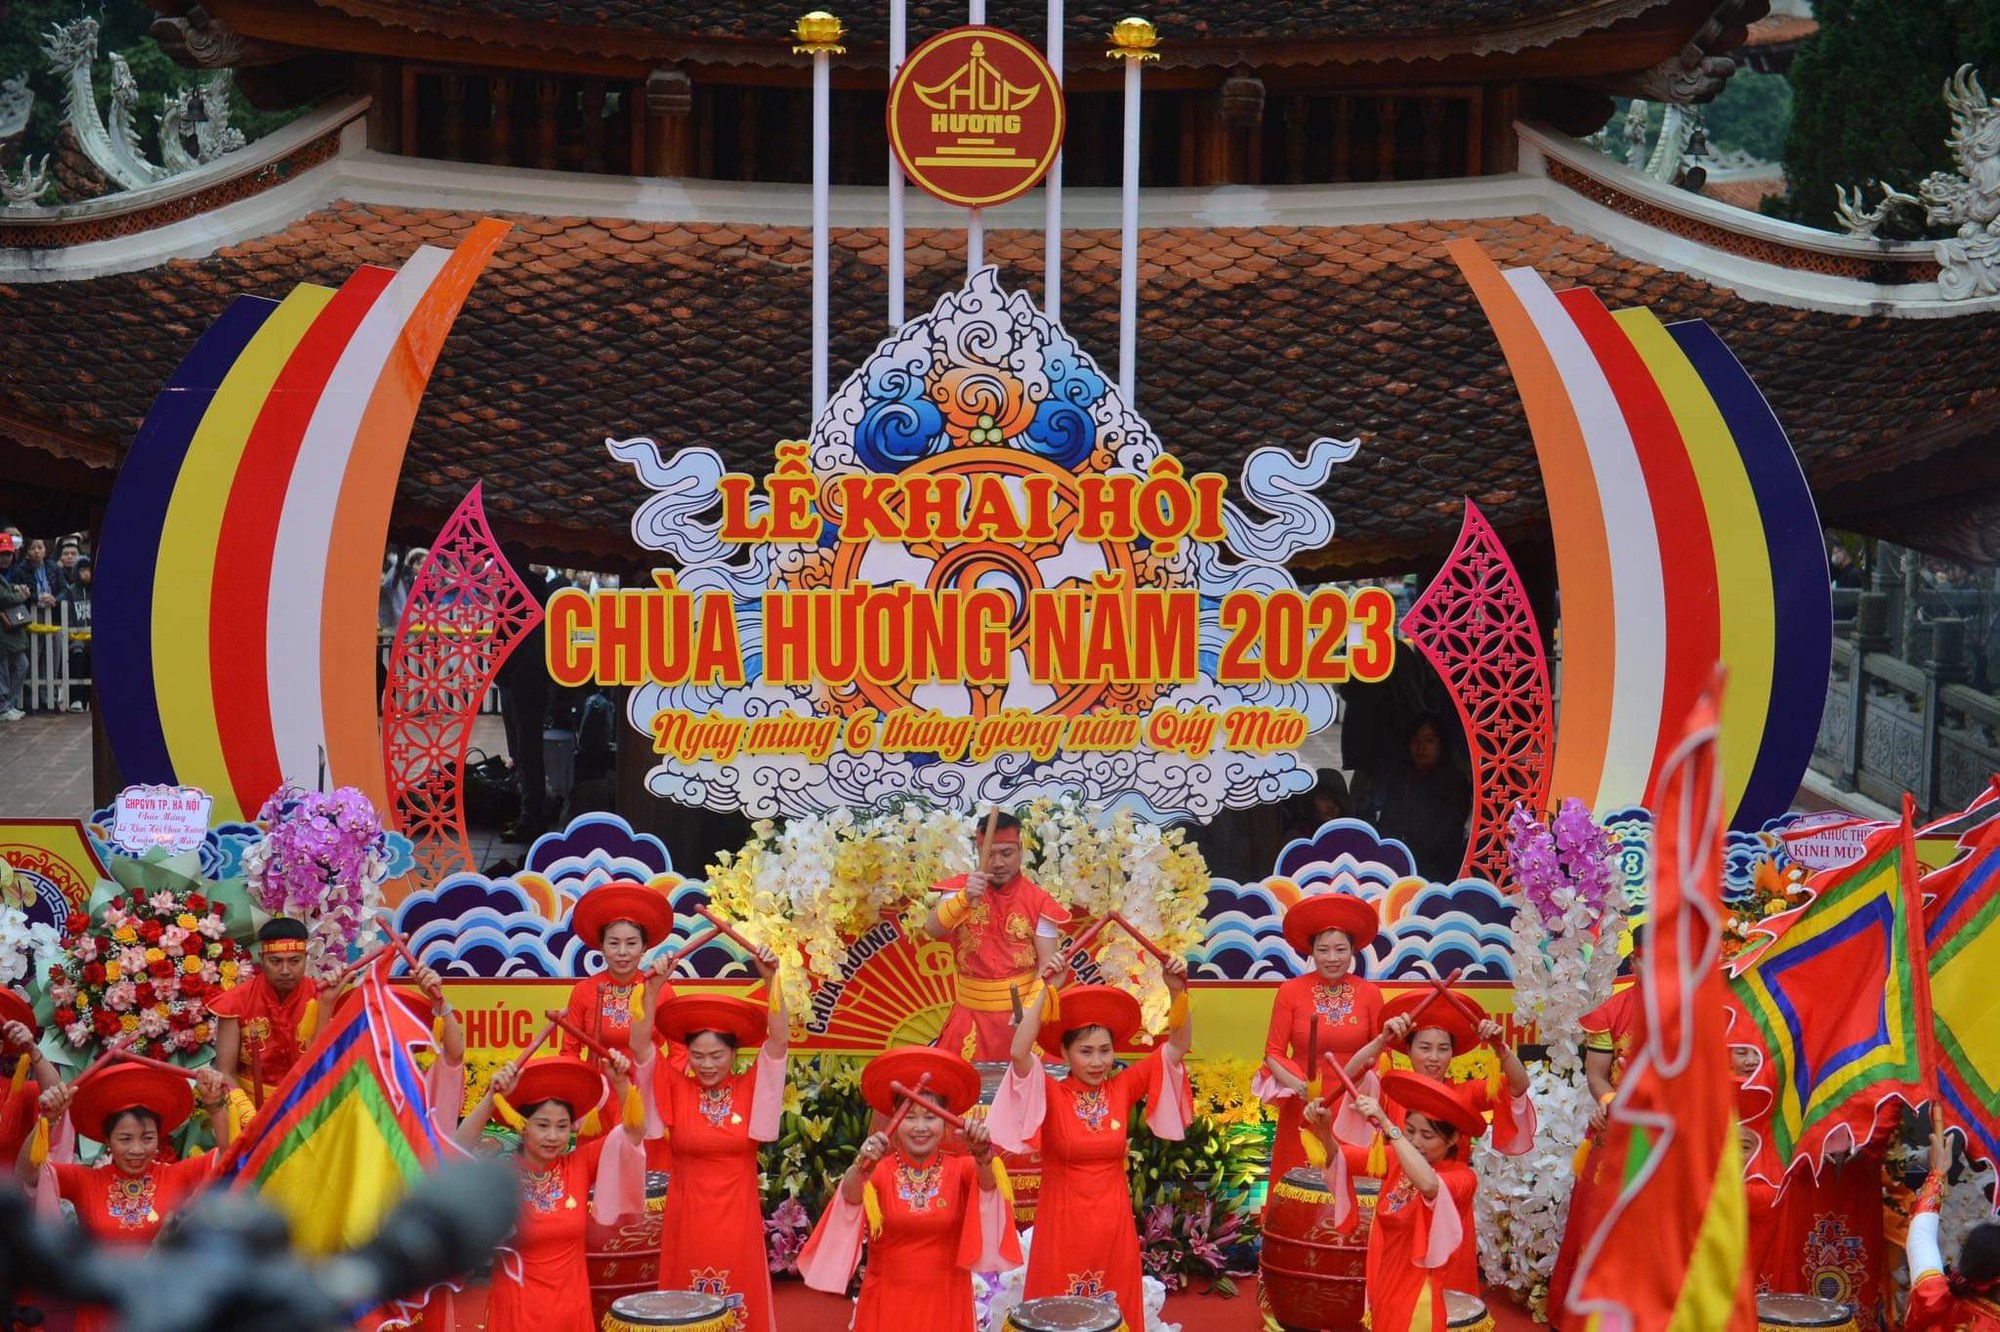 Hàng vạn người đổ về chùa Hương trong ngày khai hội